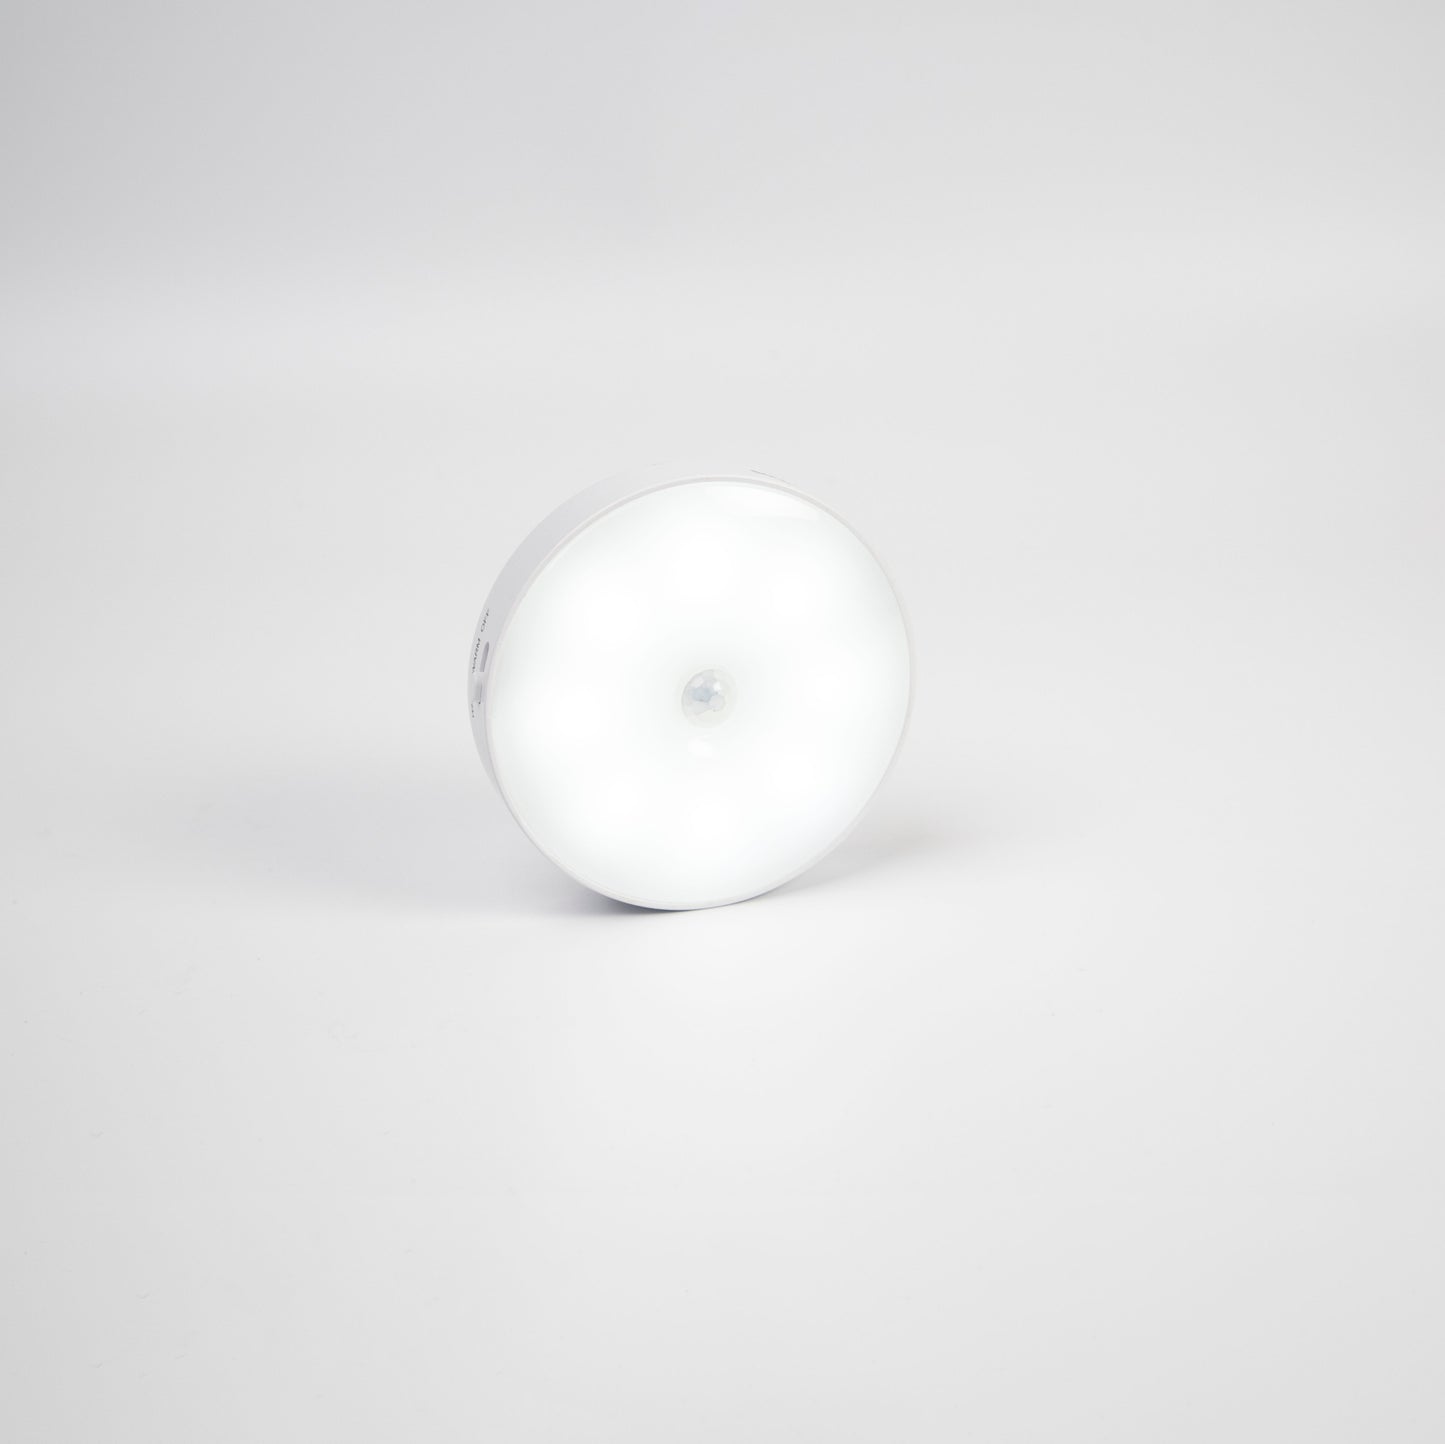 SOLMIRA® Luces Nocturnas con Sensor de Movimiento, Pack de 3, Inalámbricas, con Placa Adhesiva para Superficies Plana, Certificado CE